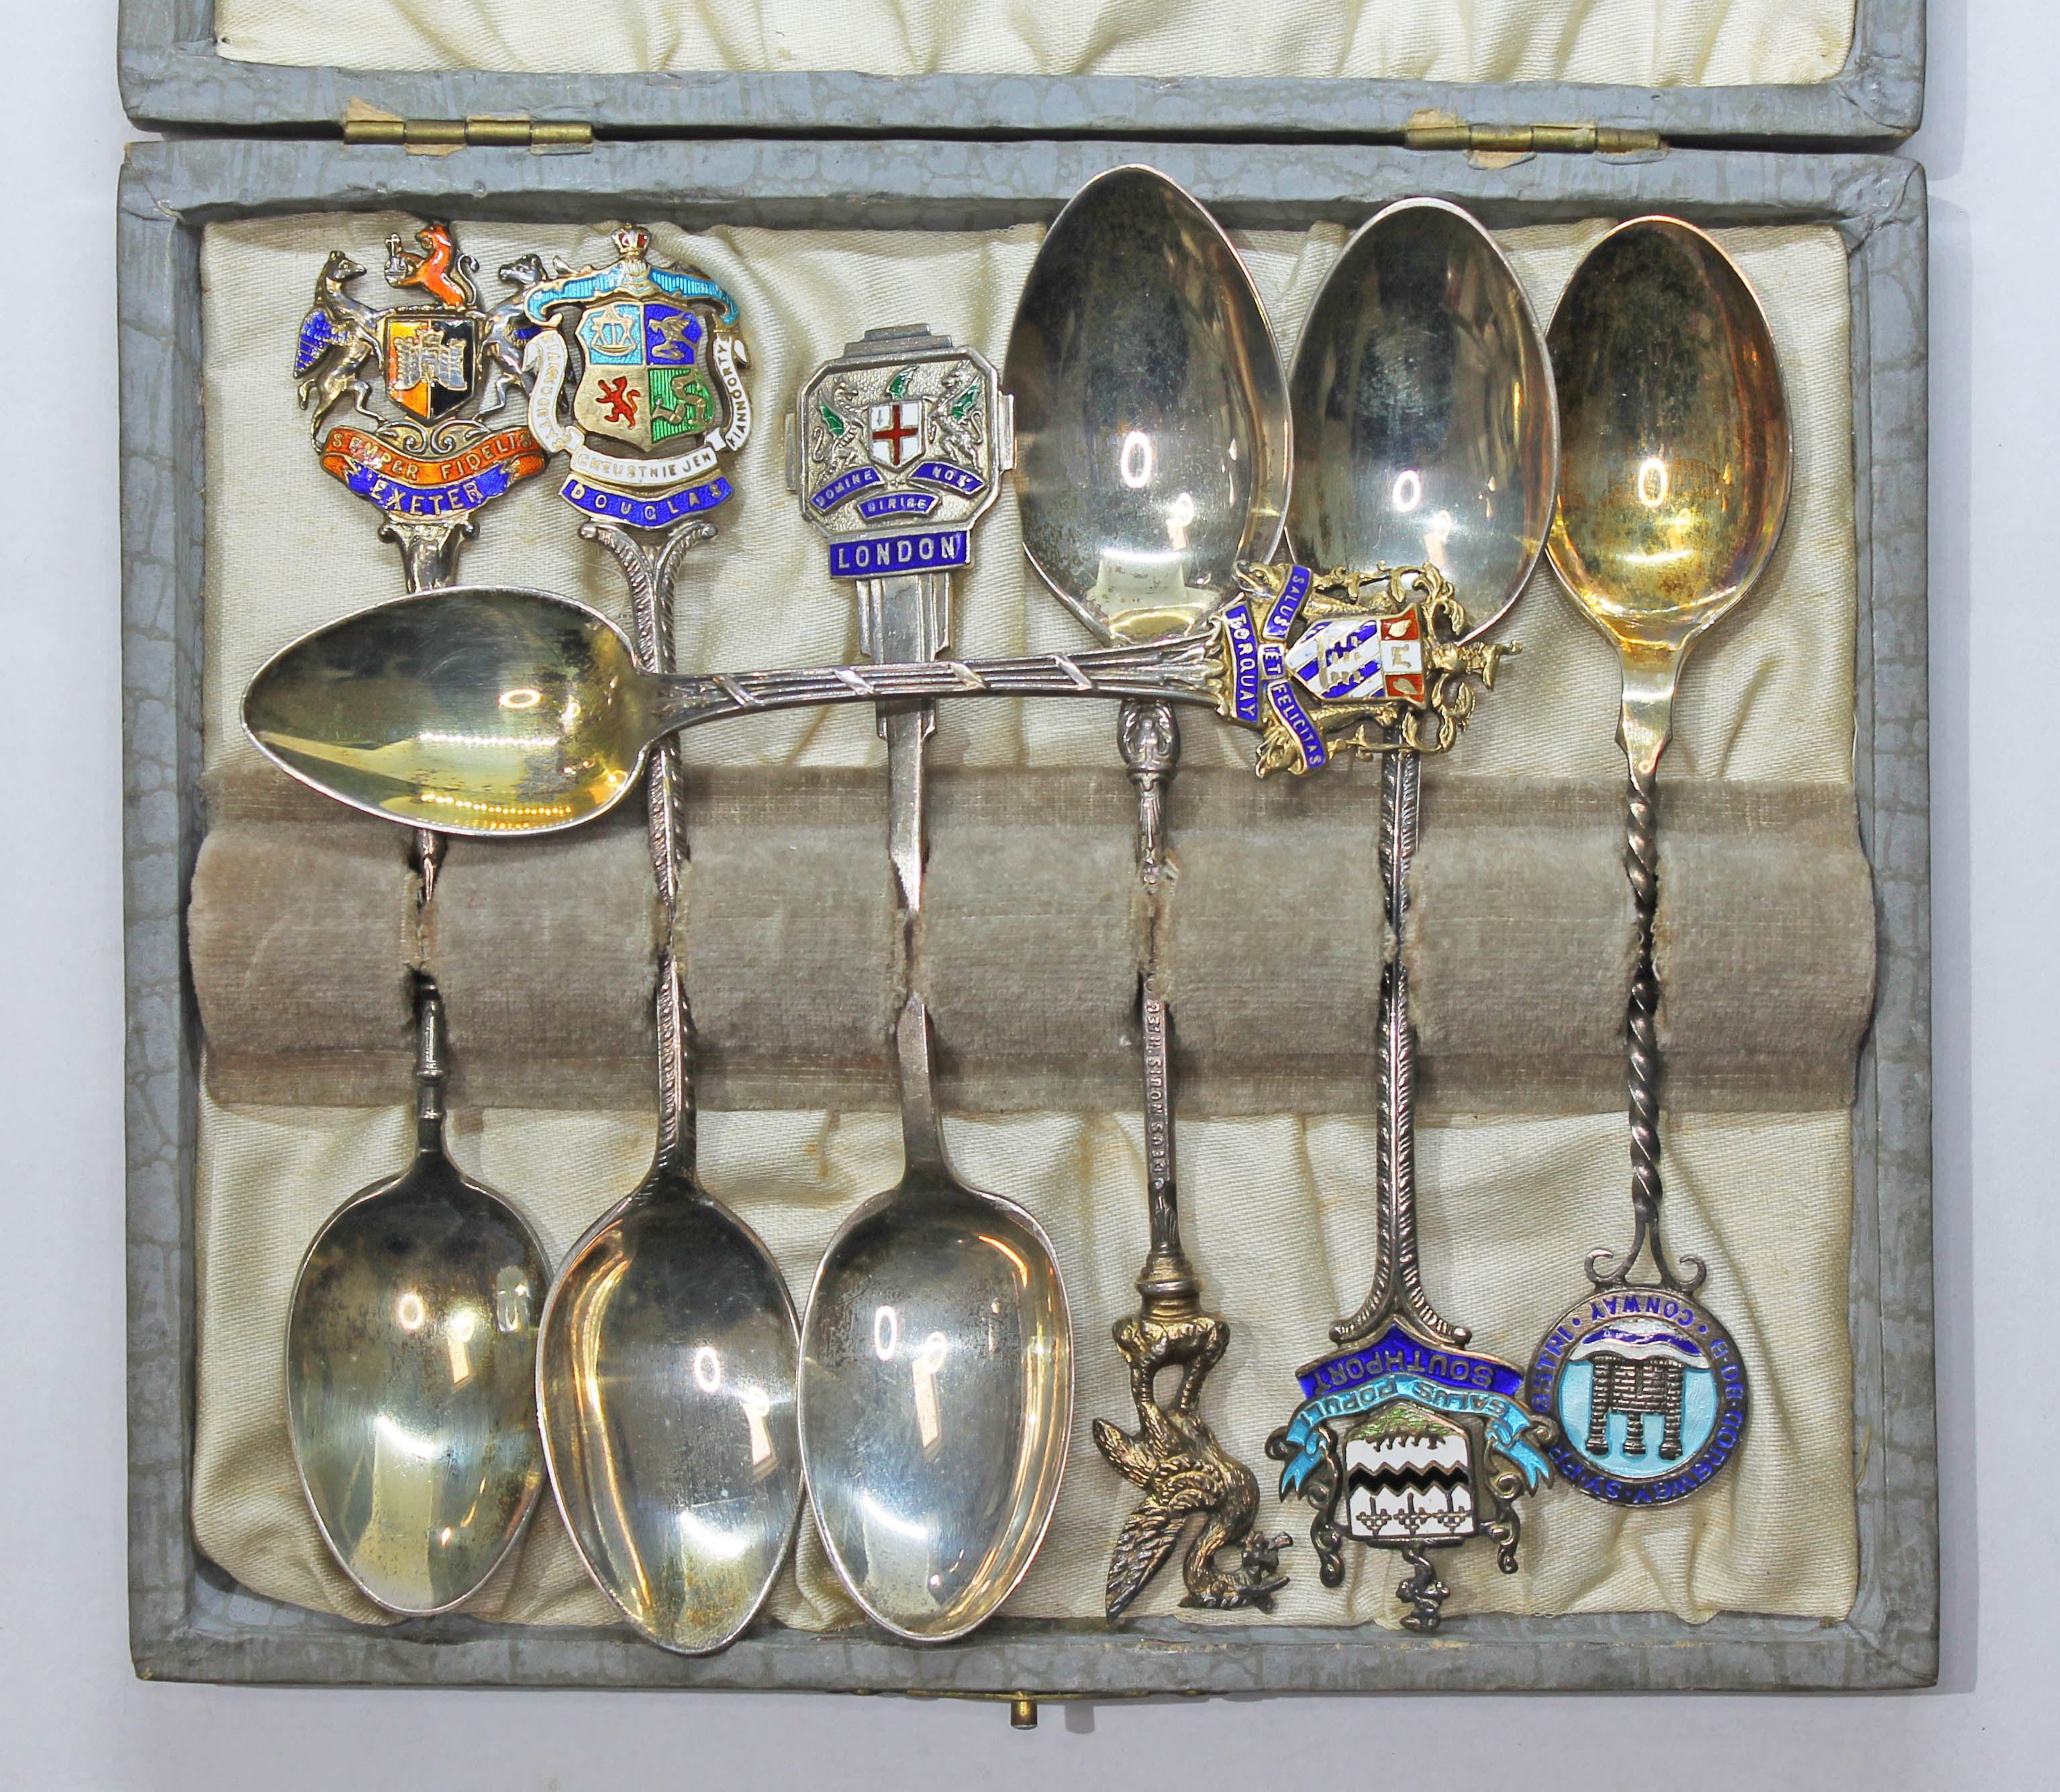 A case containing seven hallmarked silver souvenir teaspoons. Condition - general wear.